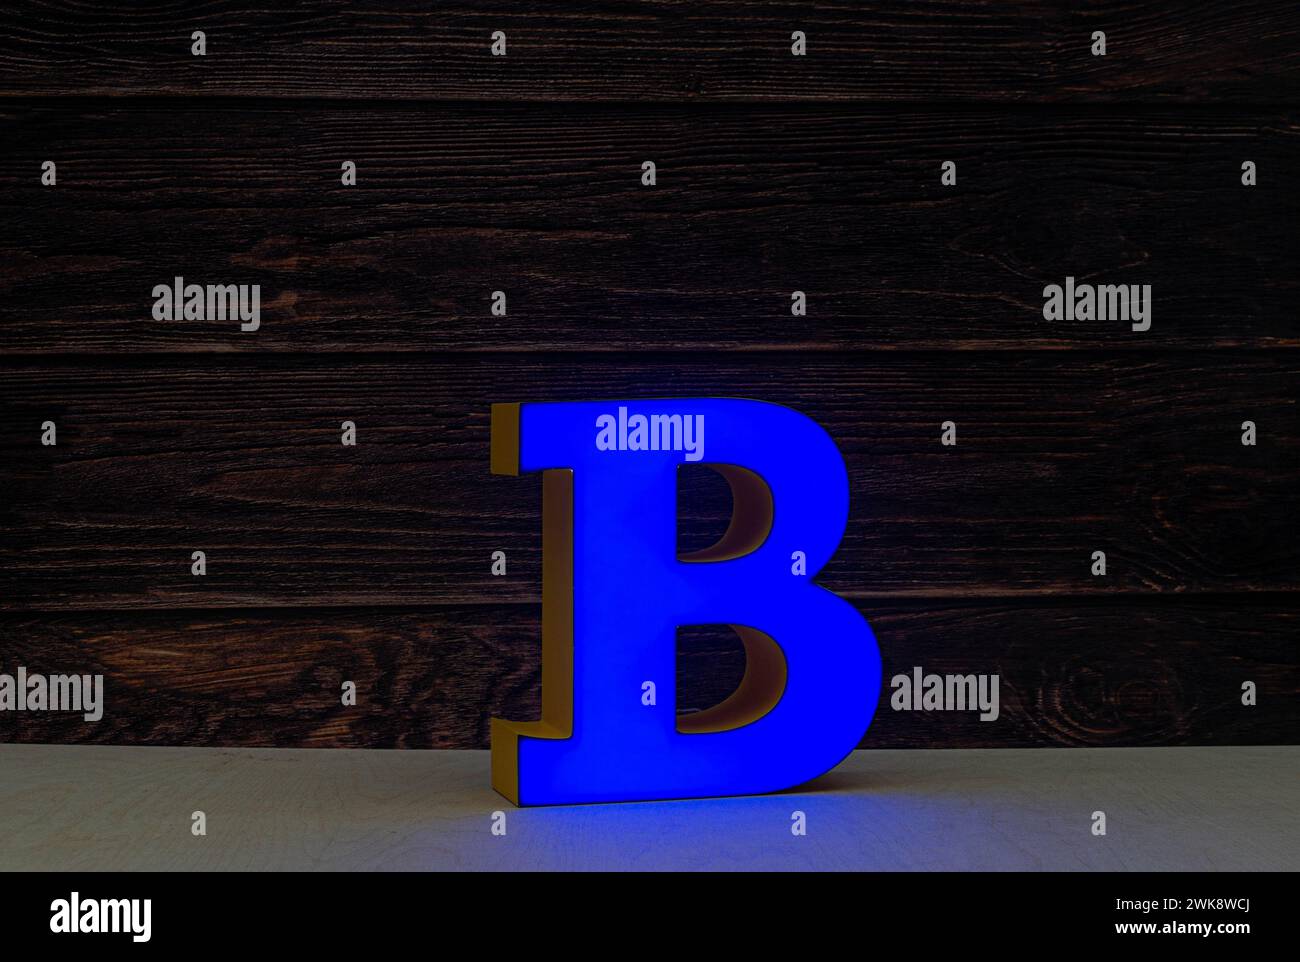 La lettre claire B fait partie d'un panneau publicitaire. Couleur bleue. Banque D'Images